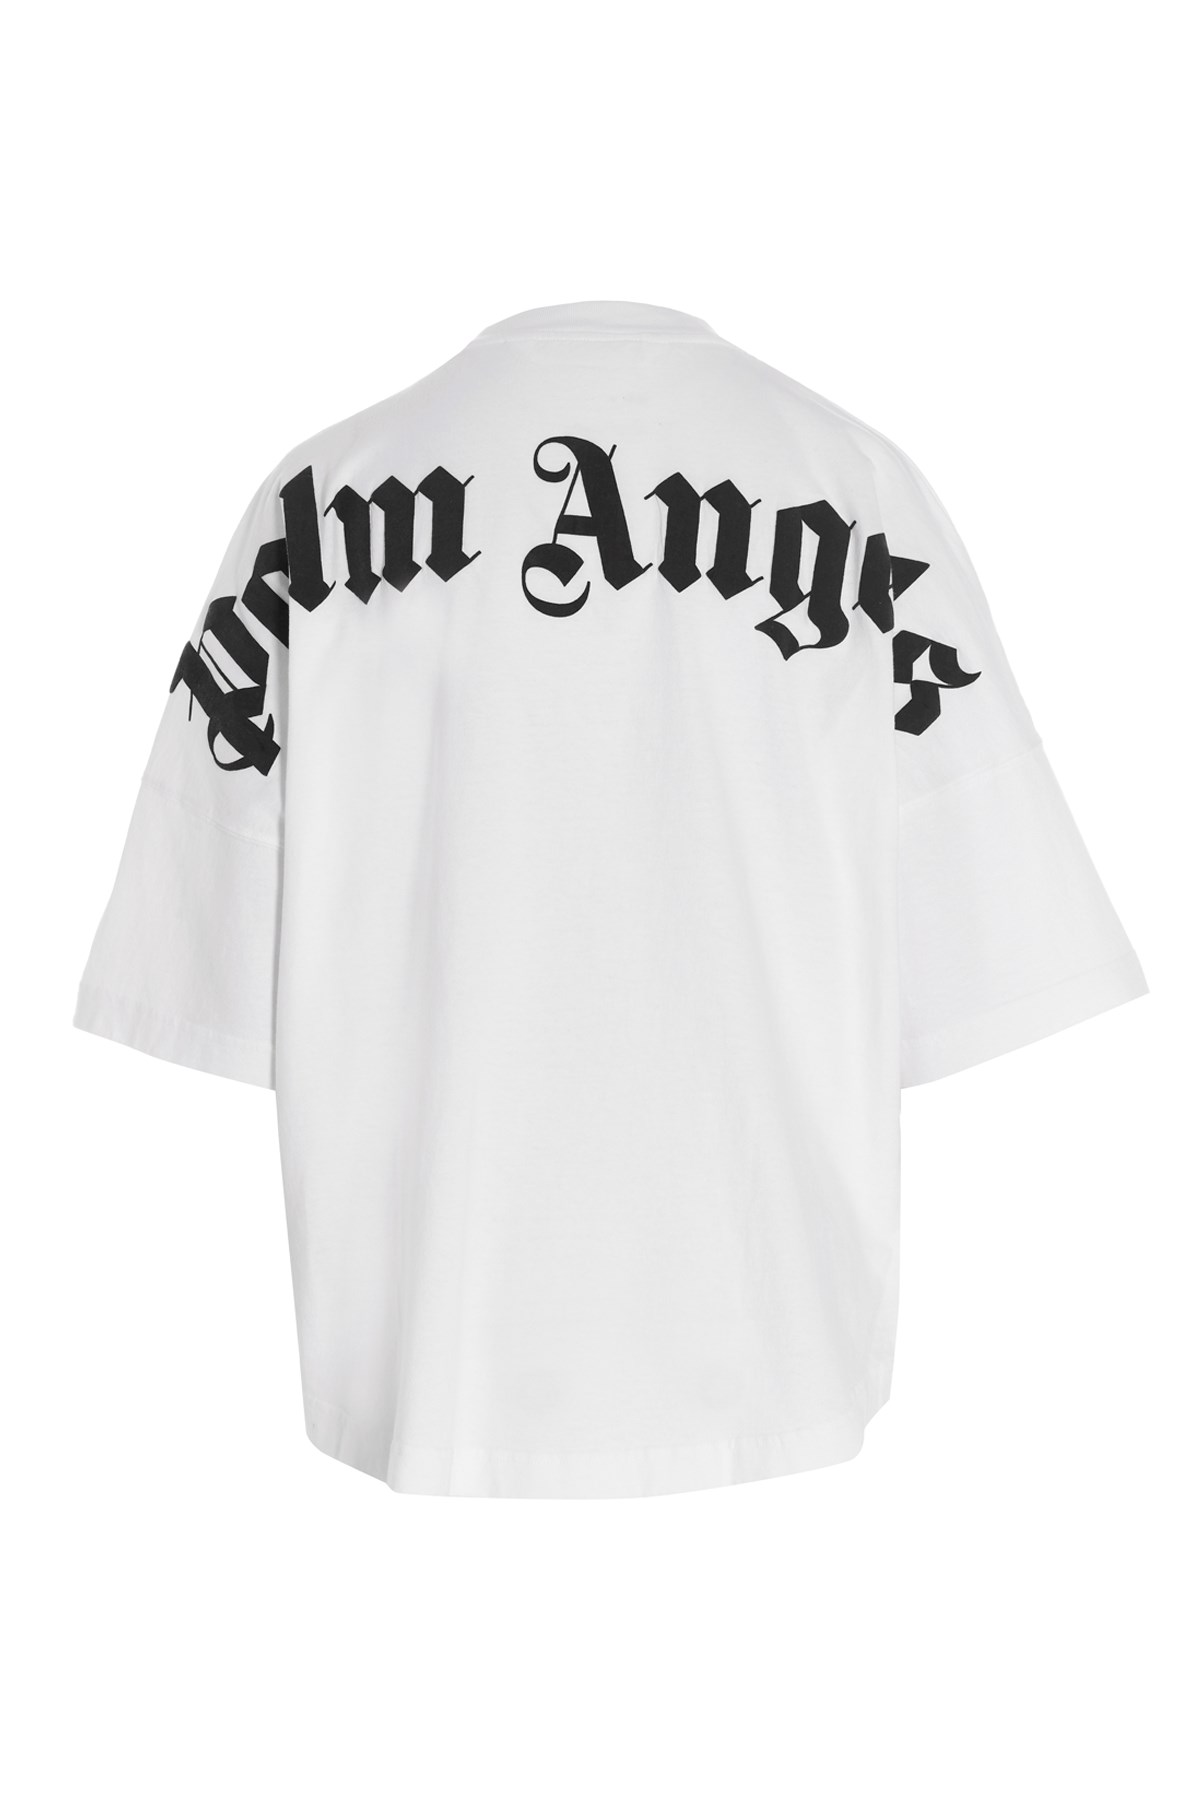 PALM ANGELS 'Classic Logo’ T-Shirt